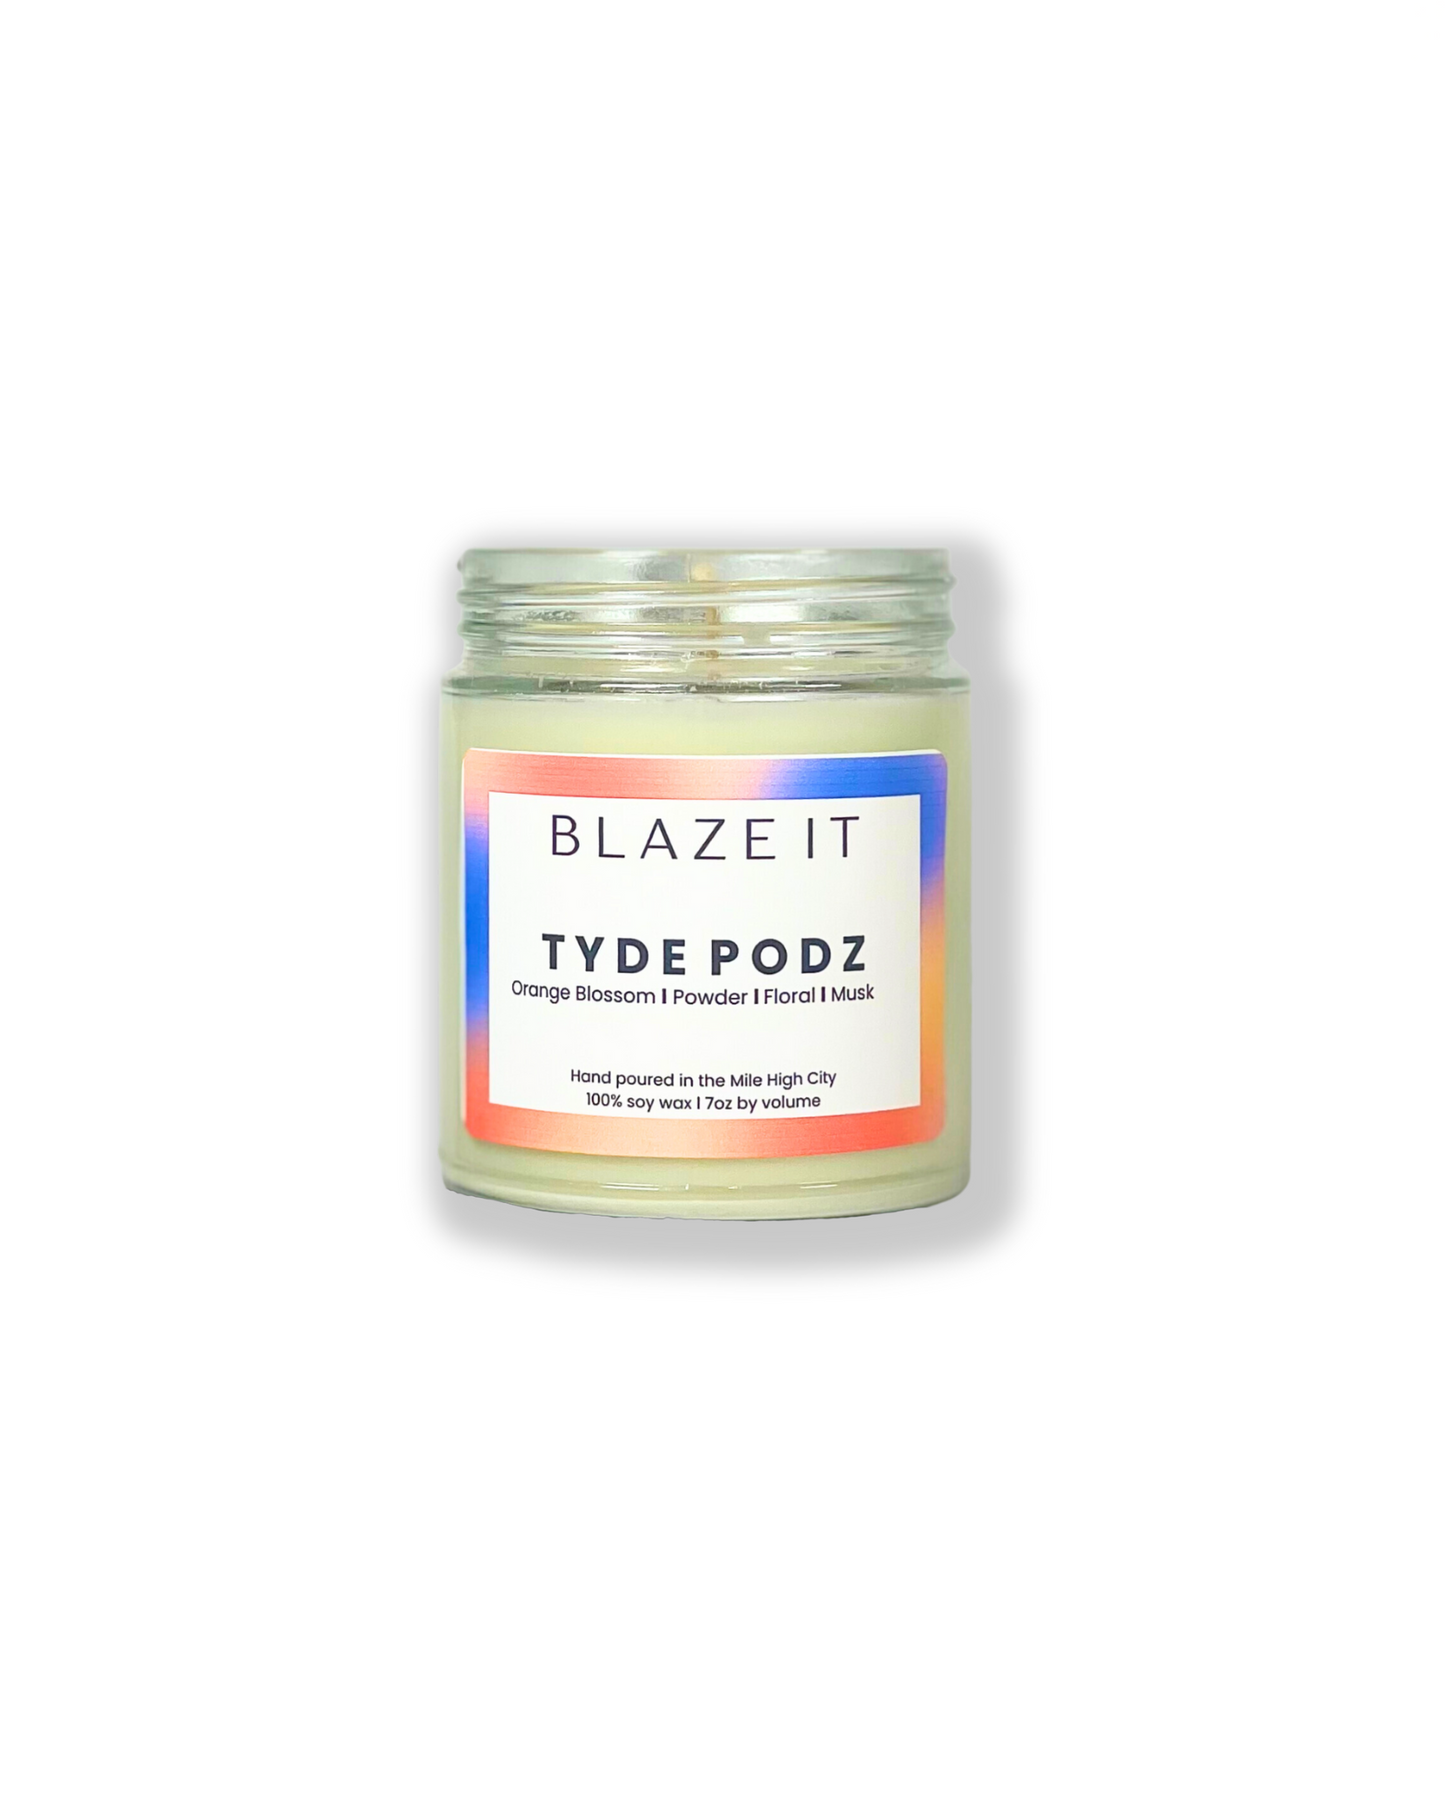 Tyde Podz candle - Blaze It Candle Co